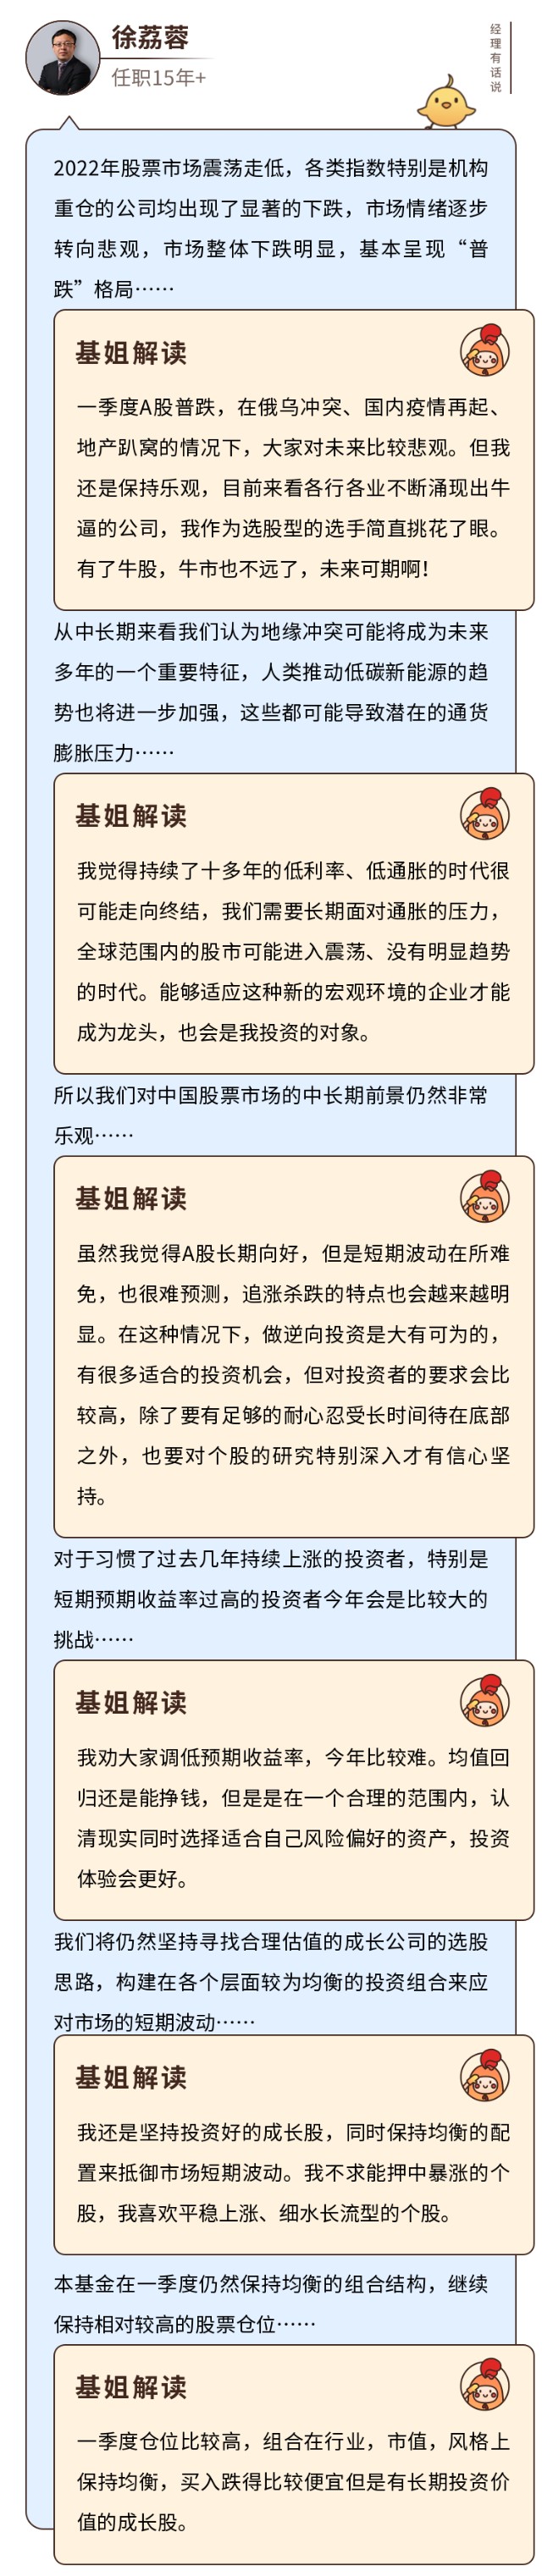 国富中国收益：双十老将徐荔蓉代表作，基民说可以放心删软件了